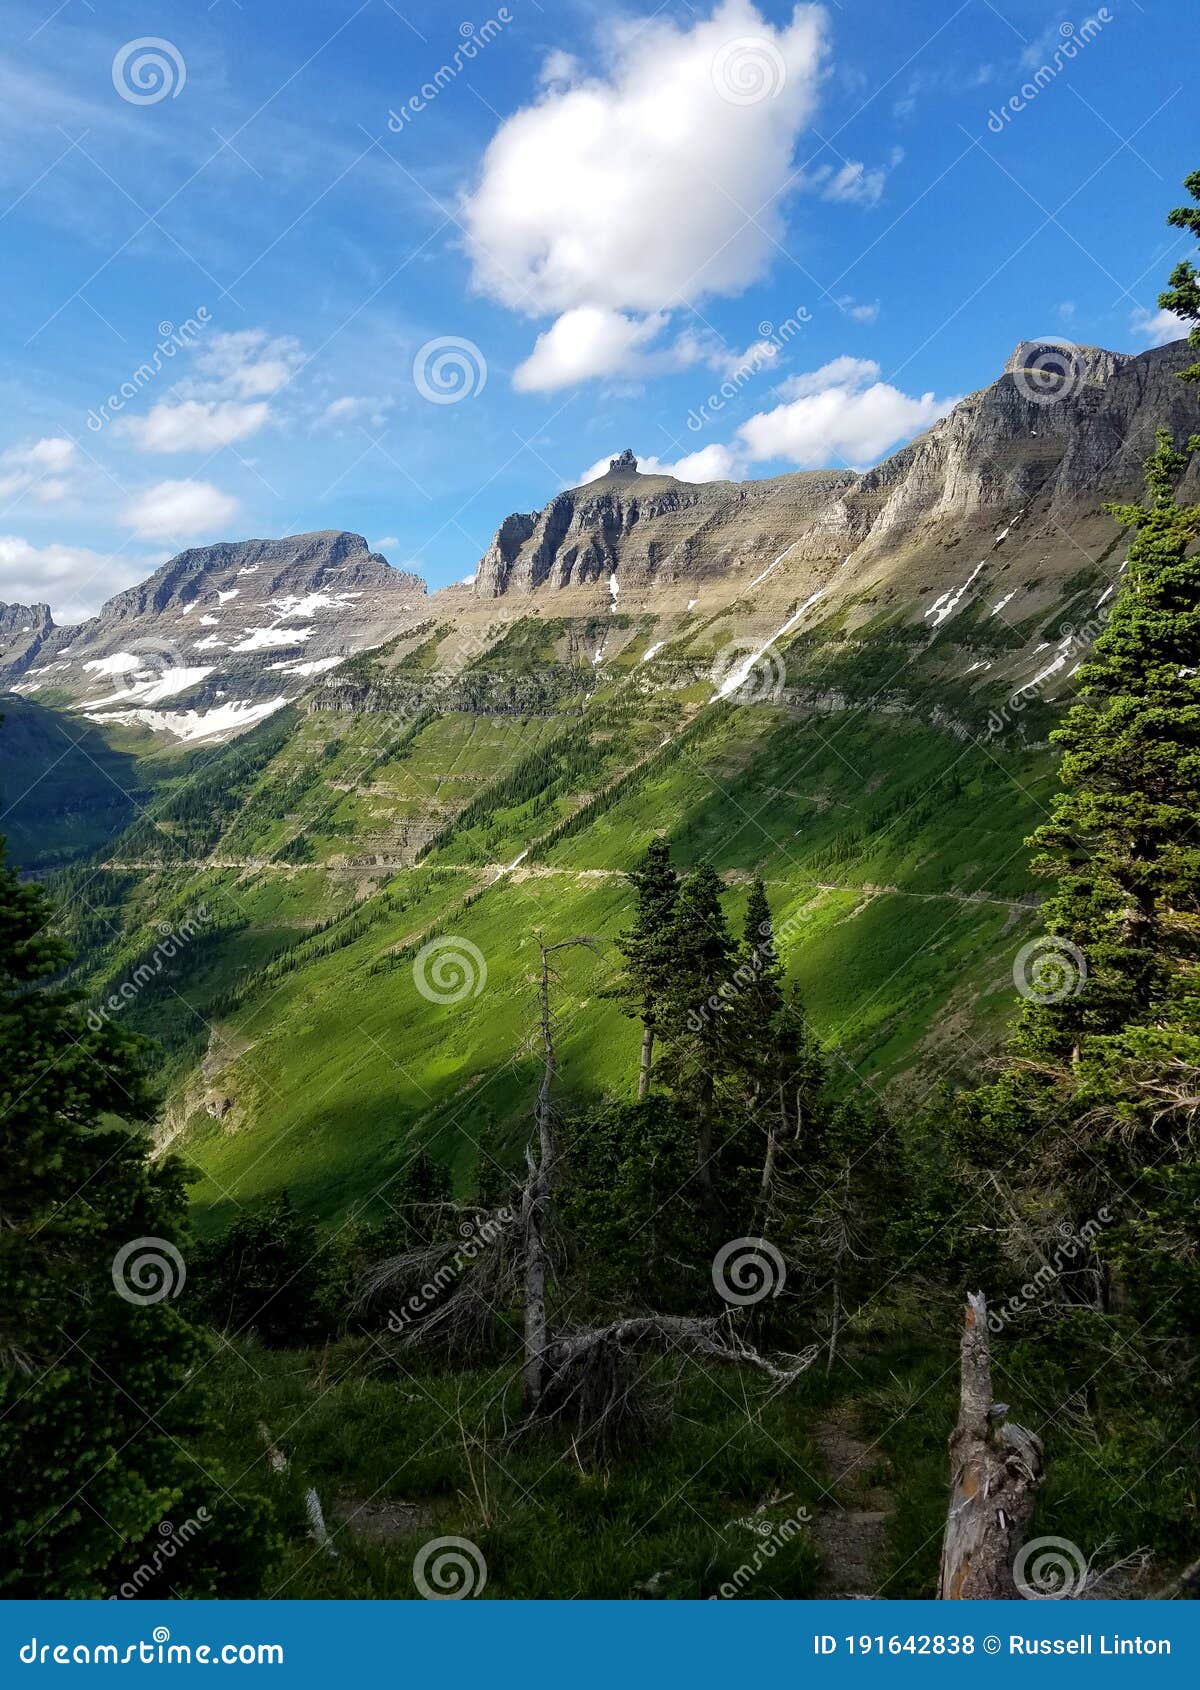 the verdant garden wall, glacier national park